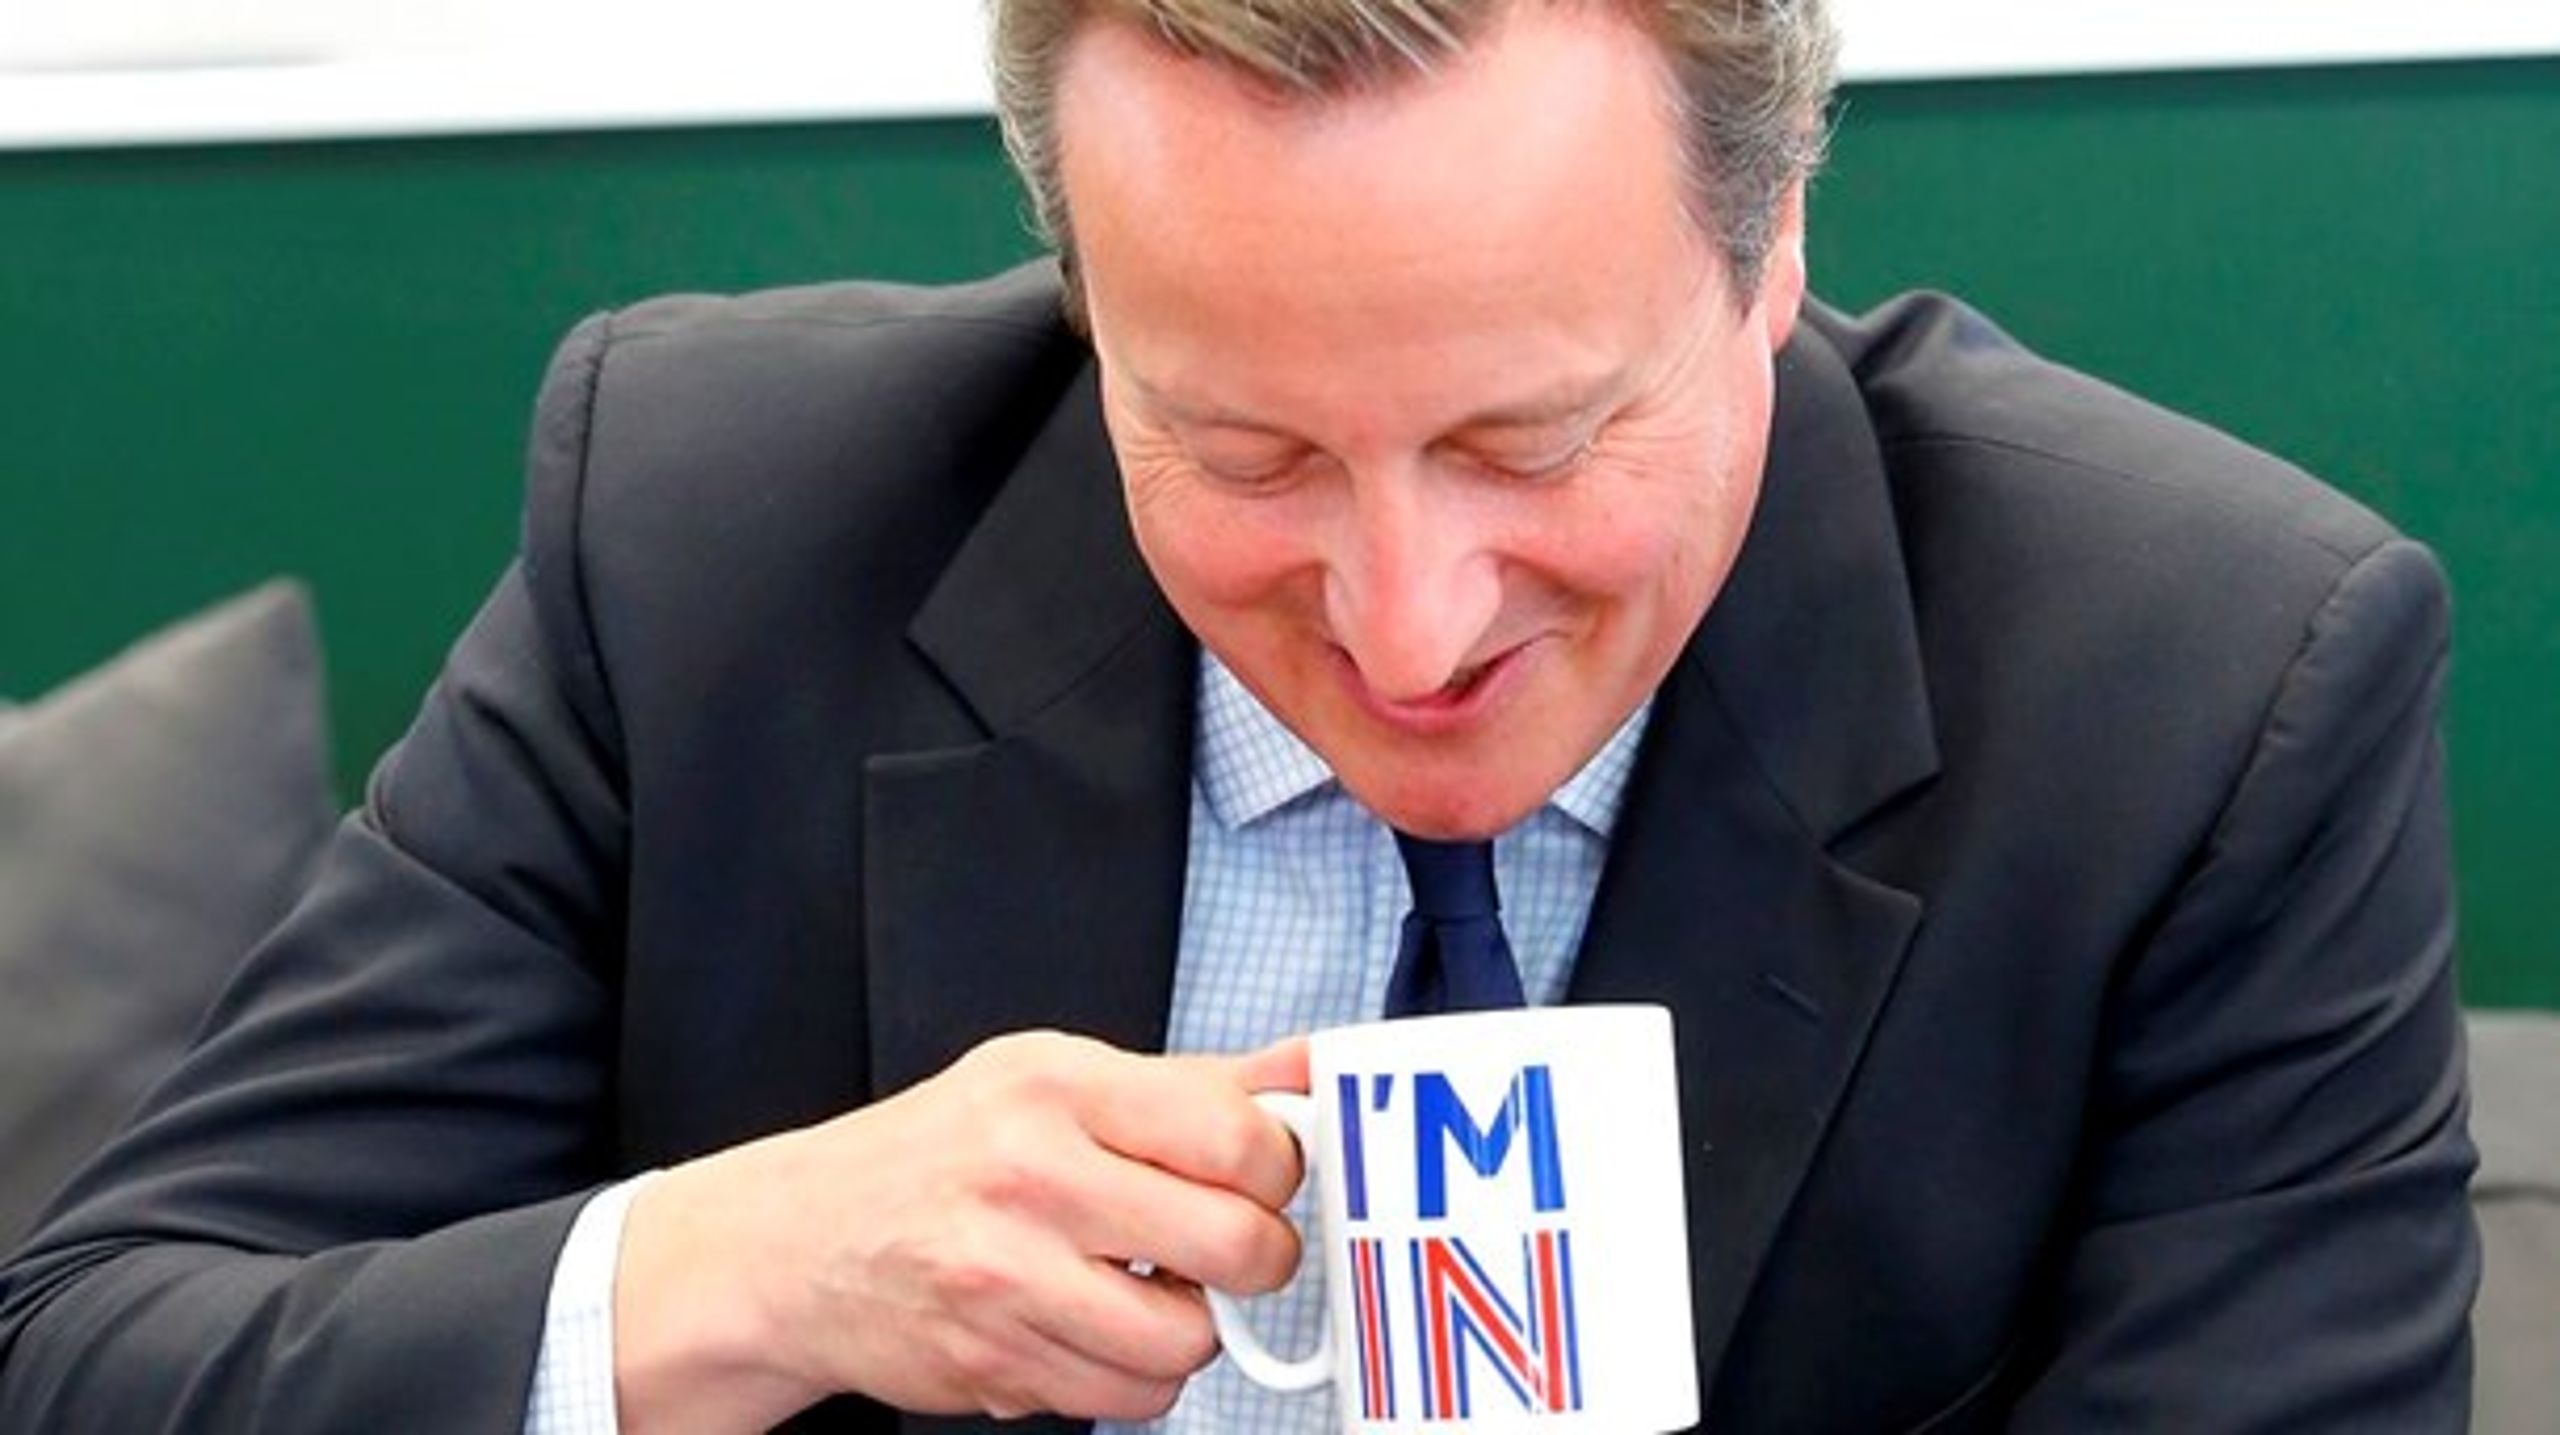 Premierminister David Cameron arbejder hårdt for et "In"-resultat ved folkeafstemning om EU-medlemskabet om under en uge. Spørgsmålet er, om han selv bliver inde, hvis han taber den.